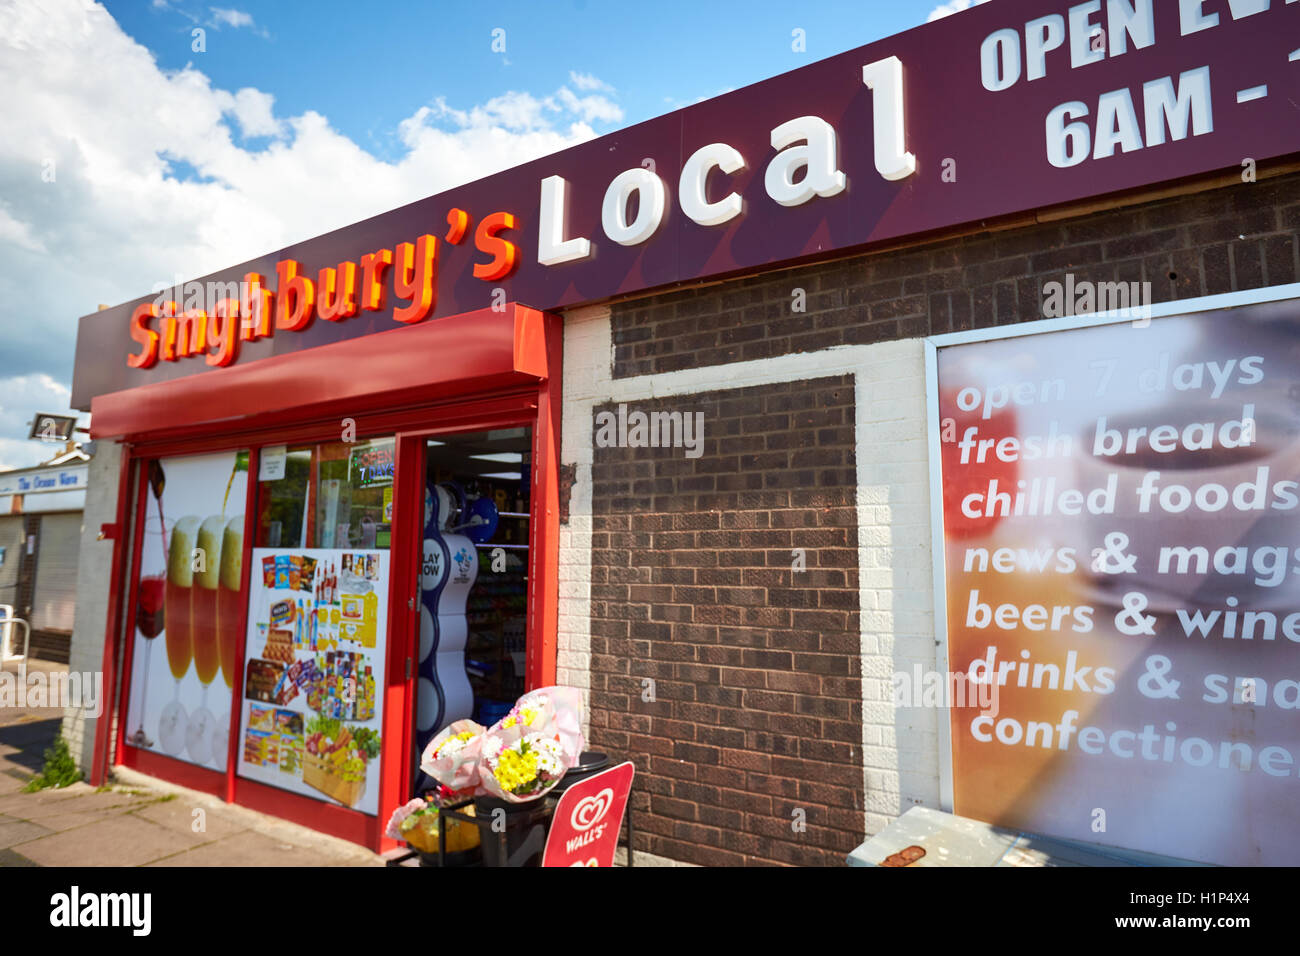 Ein Convenience-Store namens Singhbury es in Aylesbury mit branding, dass ähnelt einem Sainsbury's Local Stockfoto